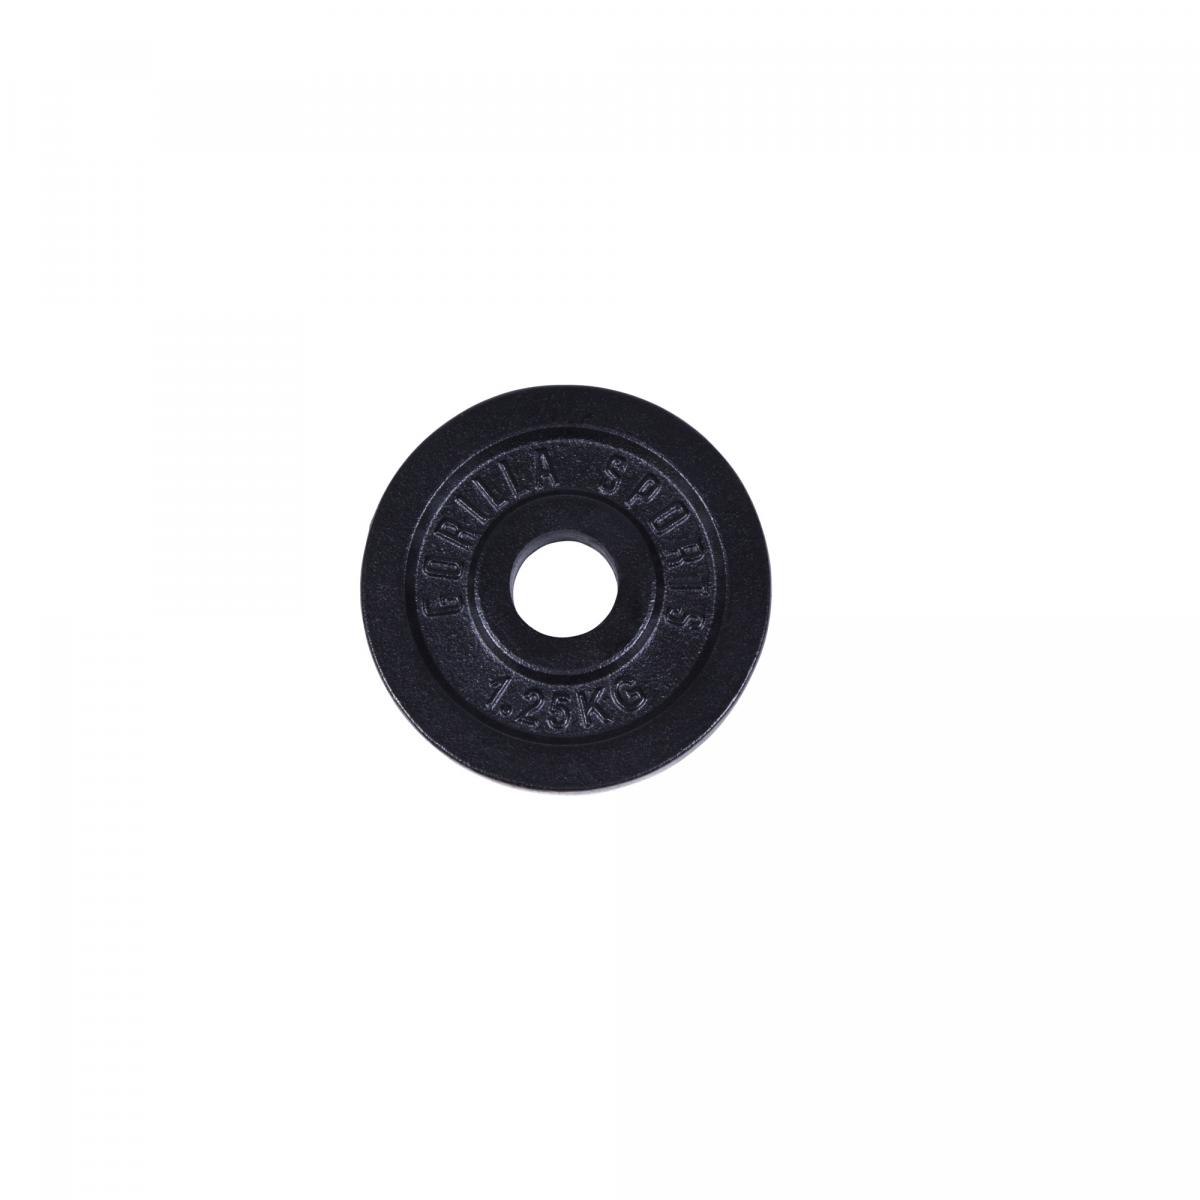 1 disque de poids en fonte noire de 1,25 kg - Ã 31mm d'alÃ©sage